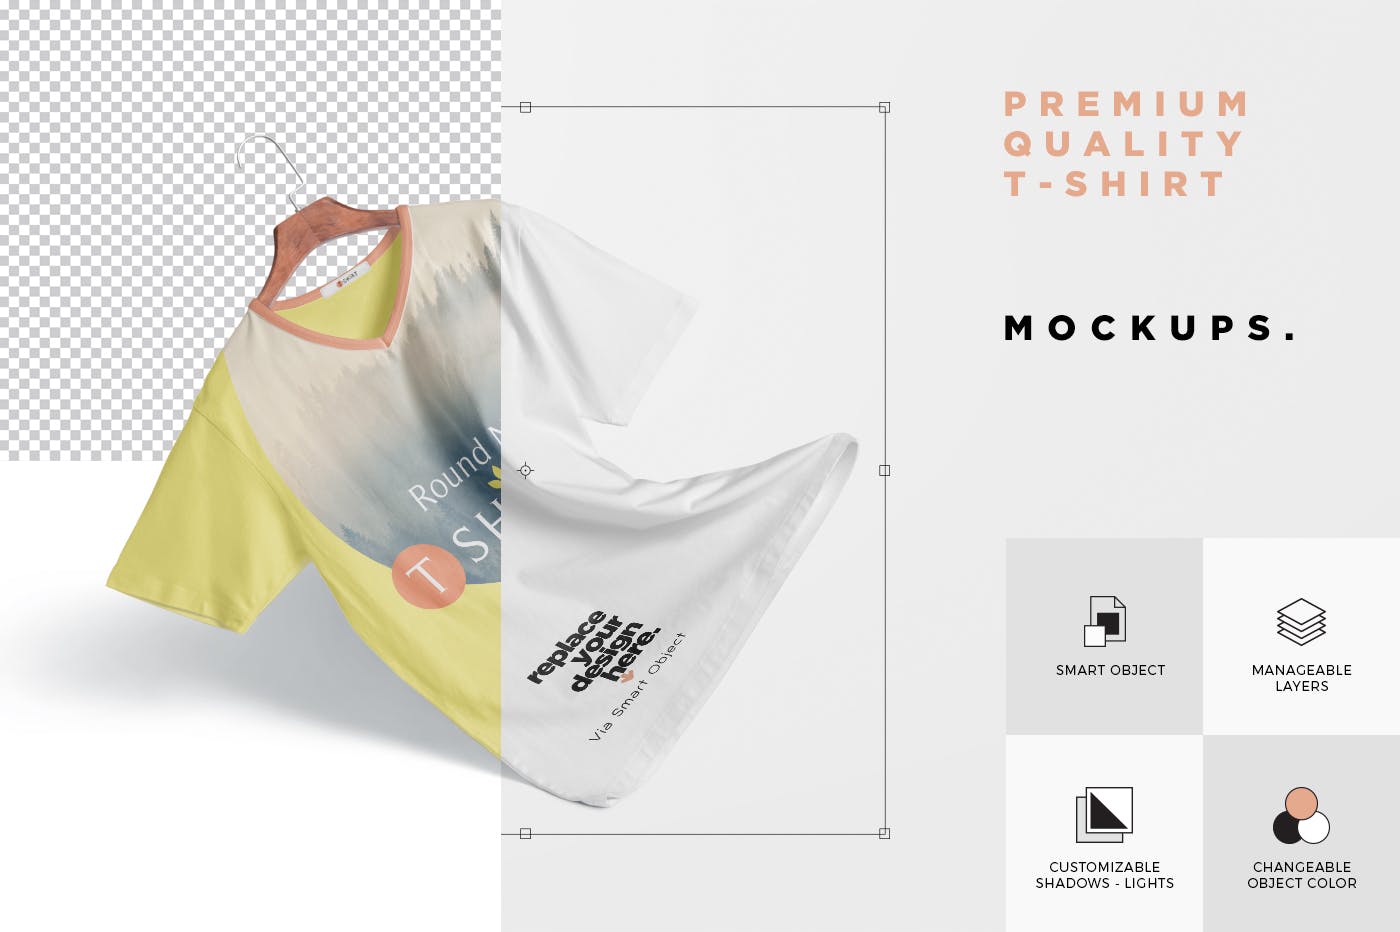 高品质T恤印花设计多角度预览效果图样机 Premium Quality T-shirt Mockup Scenes插图(4)